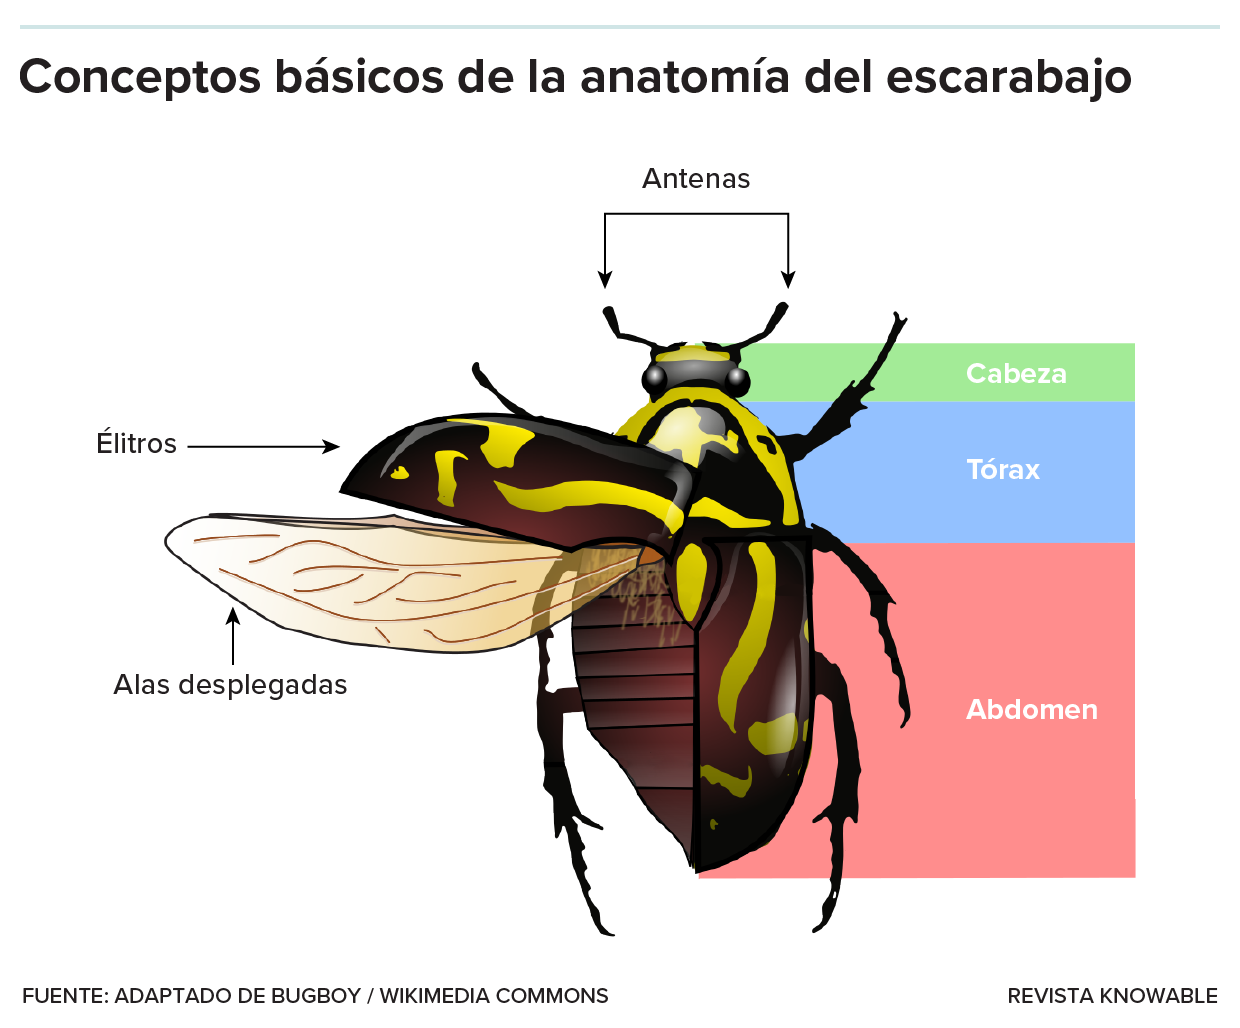 La ilustración de un escarabajo indica las partes principales del cuerpo del insecto: antenas, cabeza, tórax, abdomen, patas y estructuras de las alas.